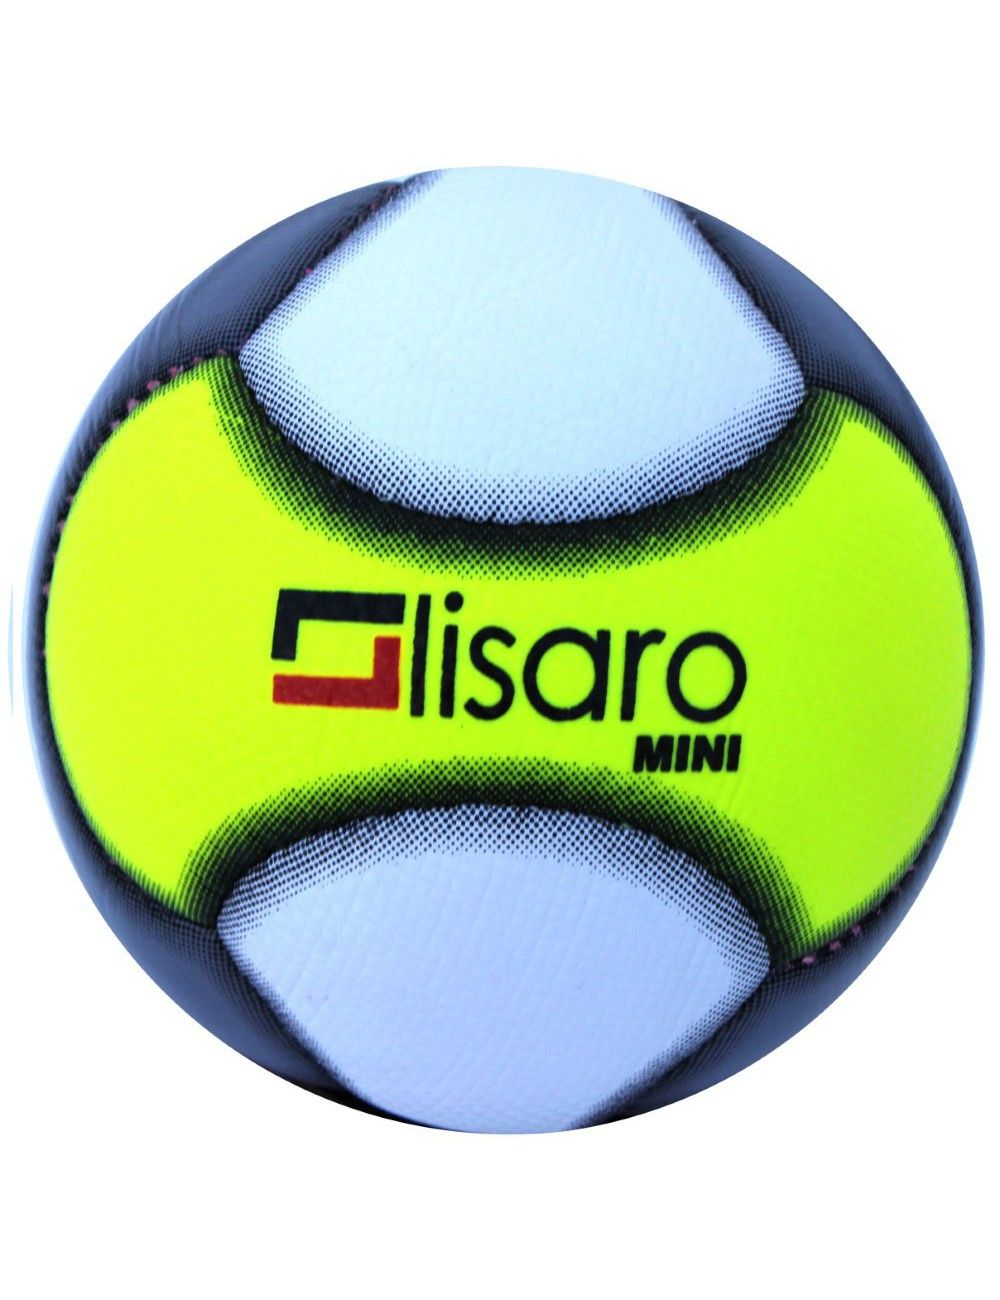 Fußball Mini, Minifussball Umfang Ca.48cm - 1